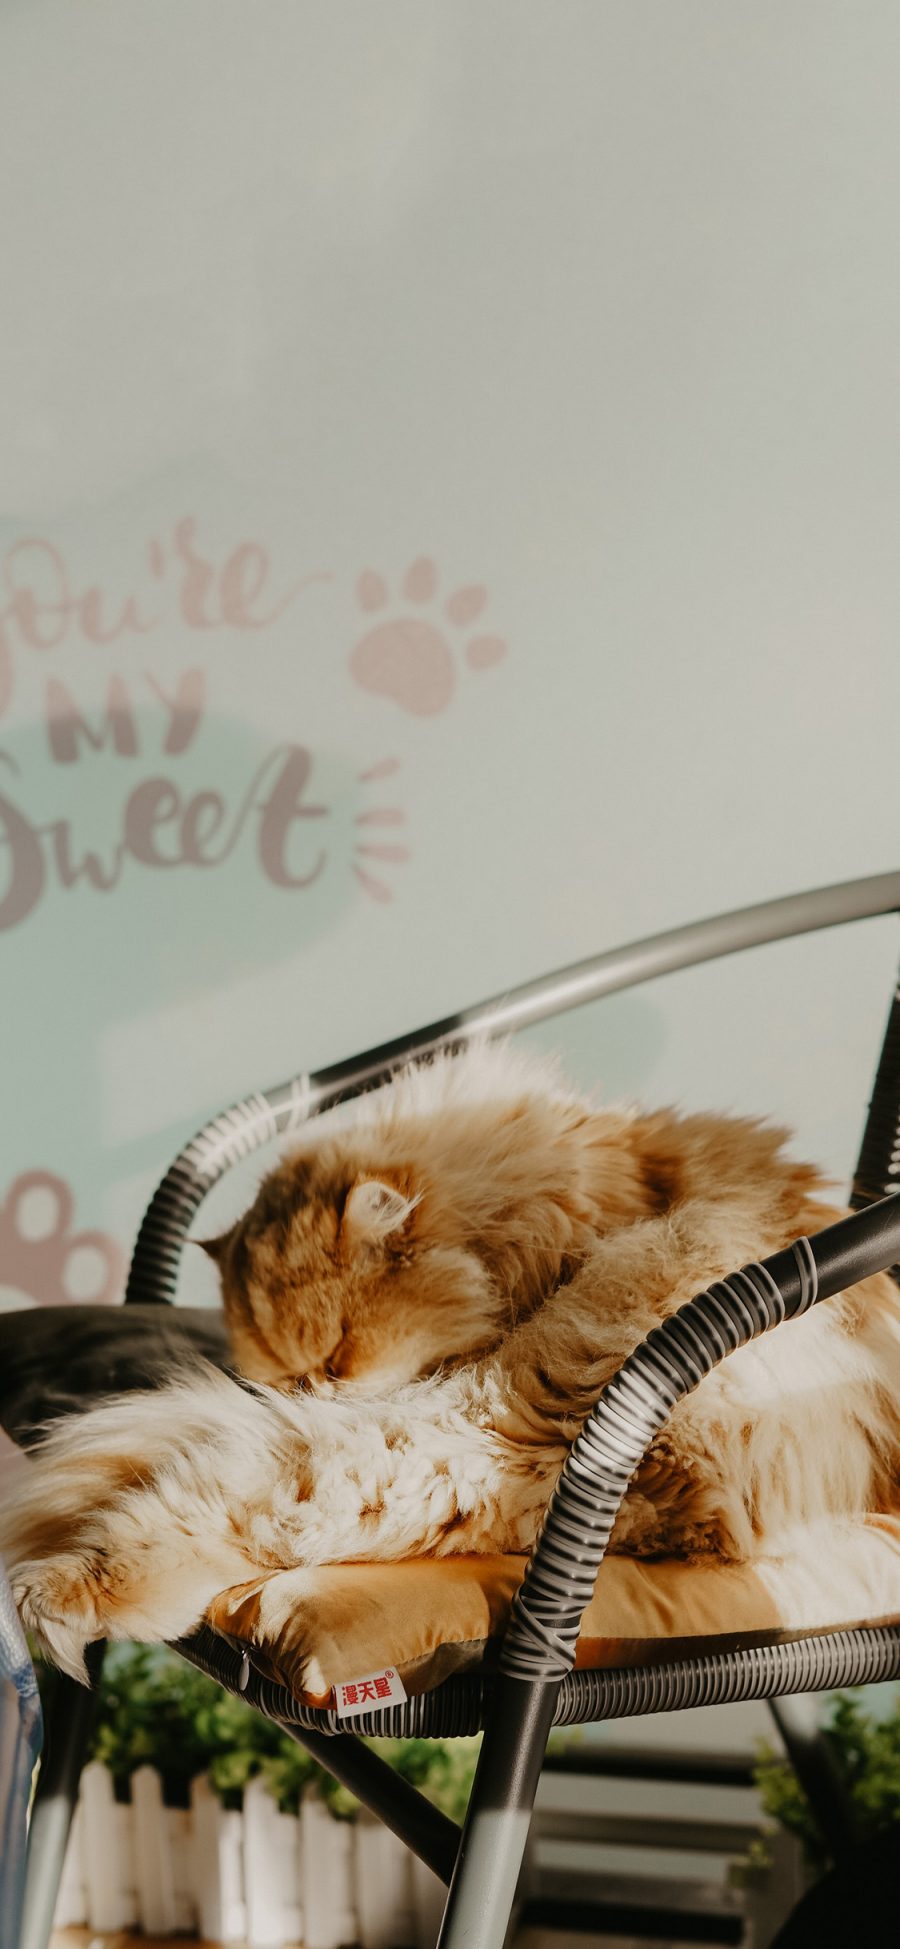 [2436×1125]椅子 猫咪 喵星人 橘猫 睡觉 苹果手机壁纸图片